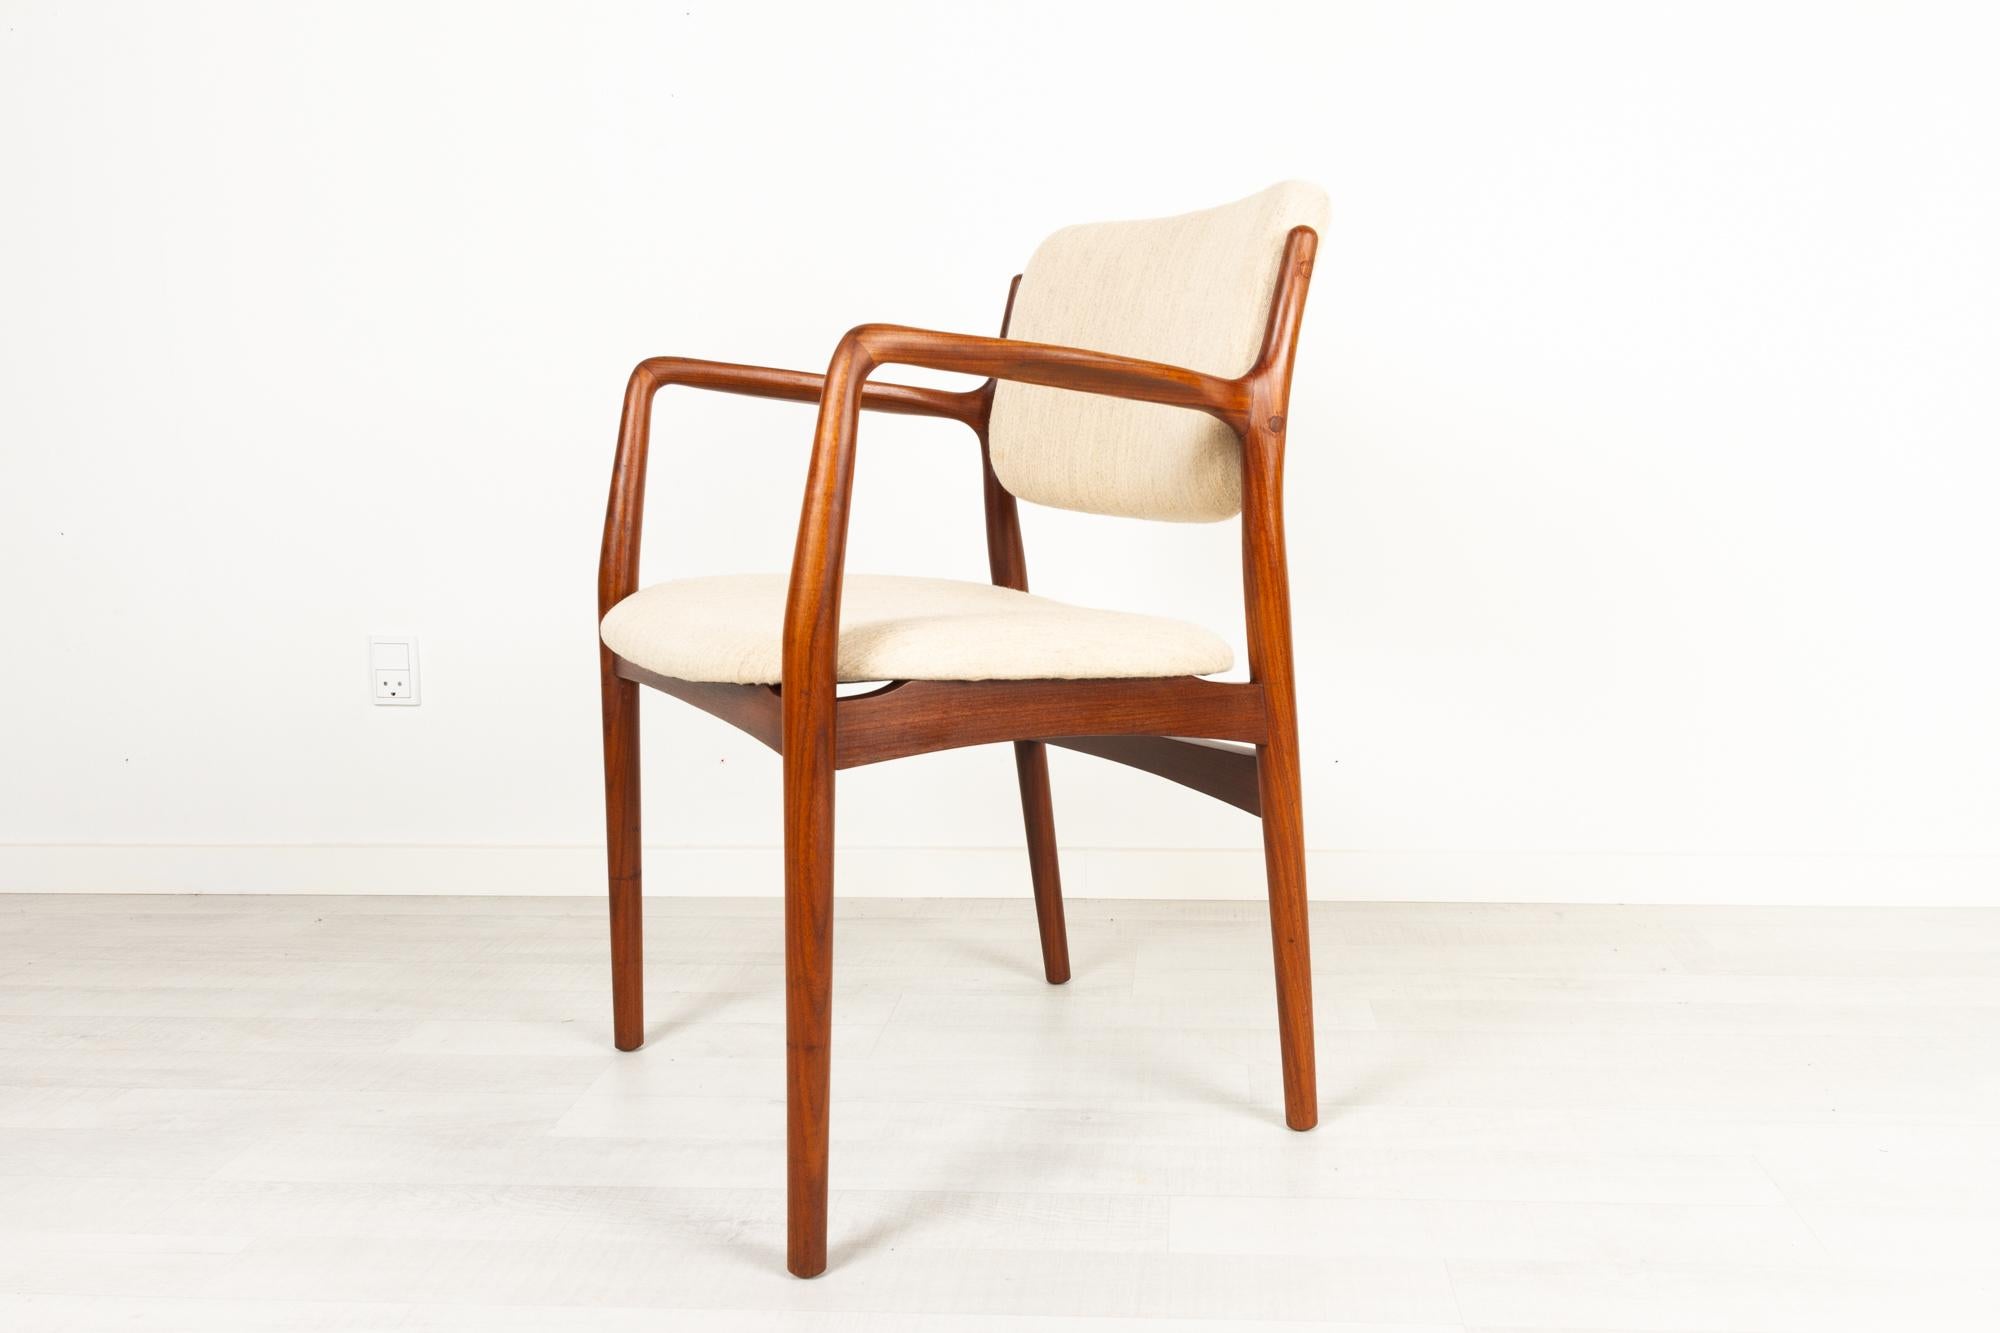 Fauteuil vintage danois en teck 1950s
Elegant et sculptural fauteuil danois Mid-Century Modern en teck massif. Assise et dossier retapissés en tissu de laine beige clair. Pieds coniques ronds. Accoudoirs évasés.
Très beau teck avec un grain